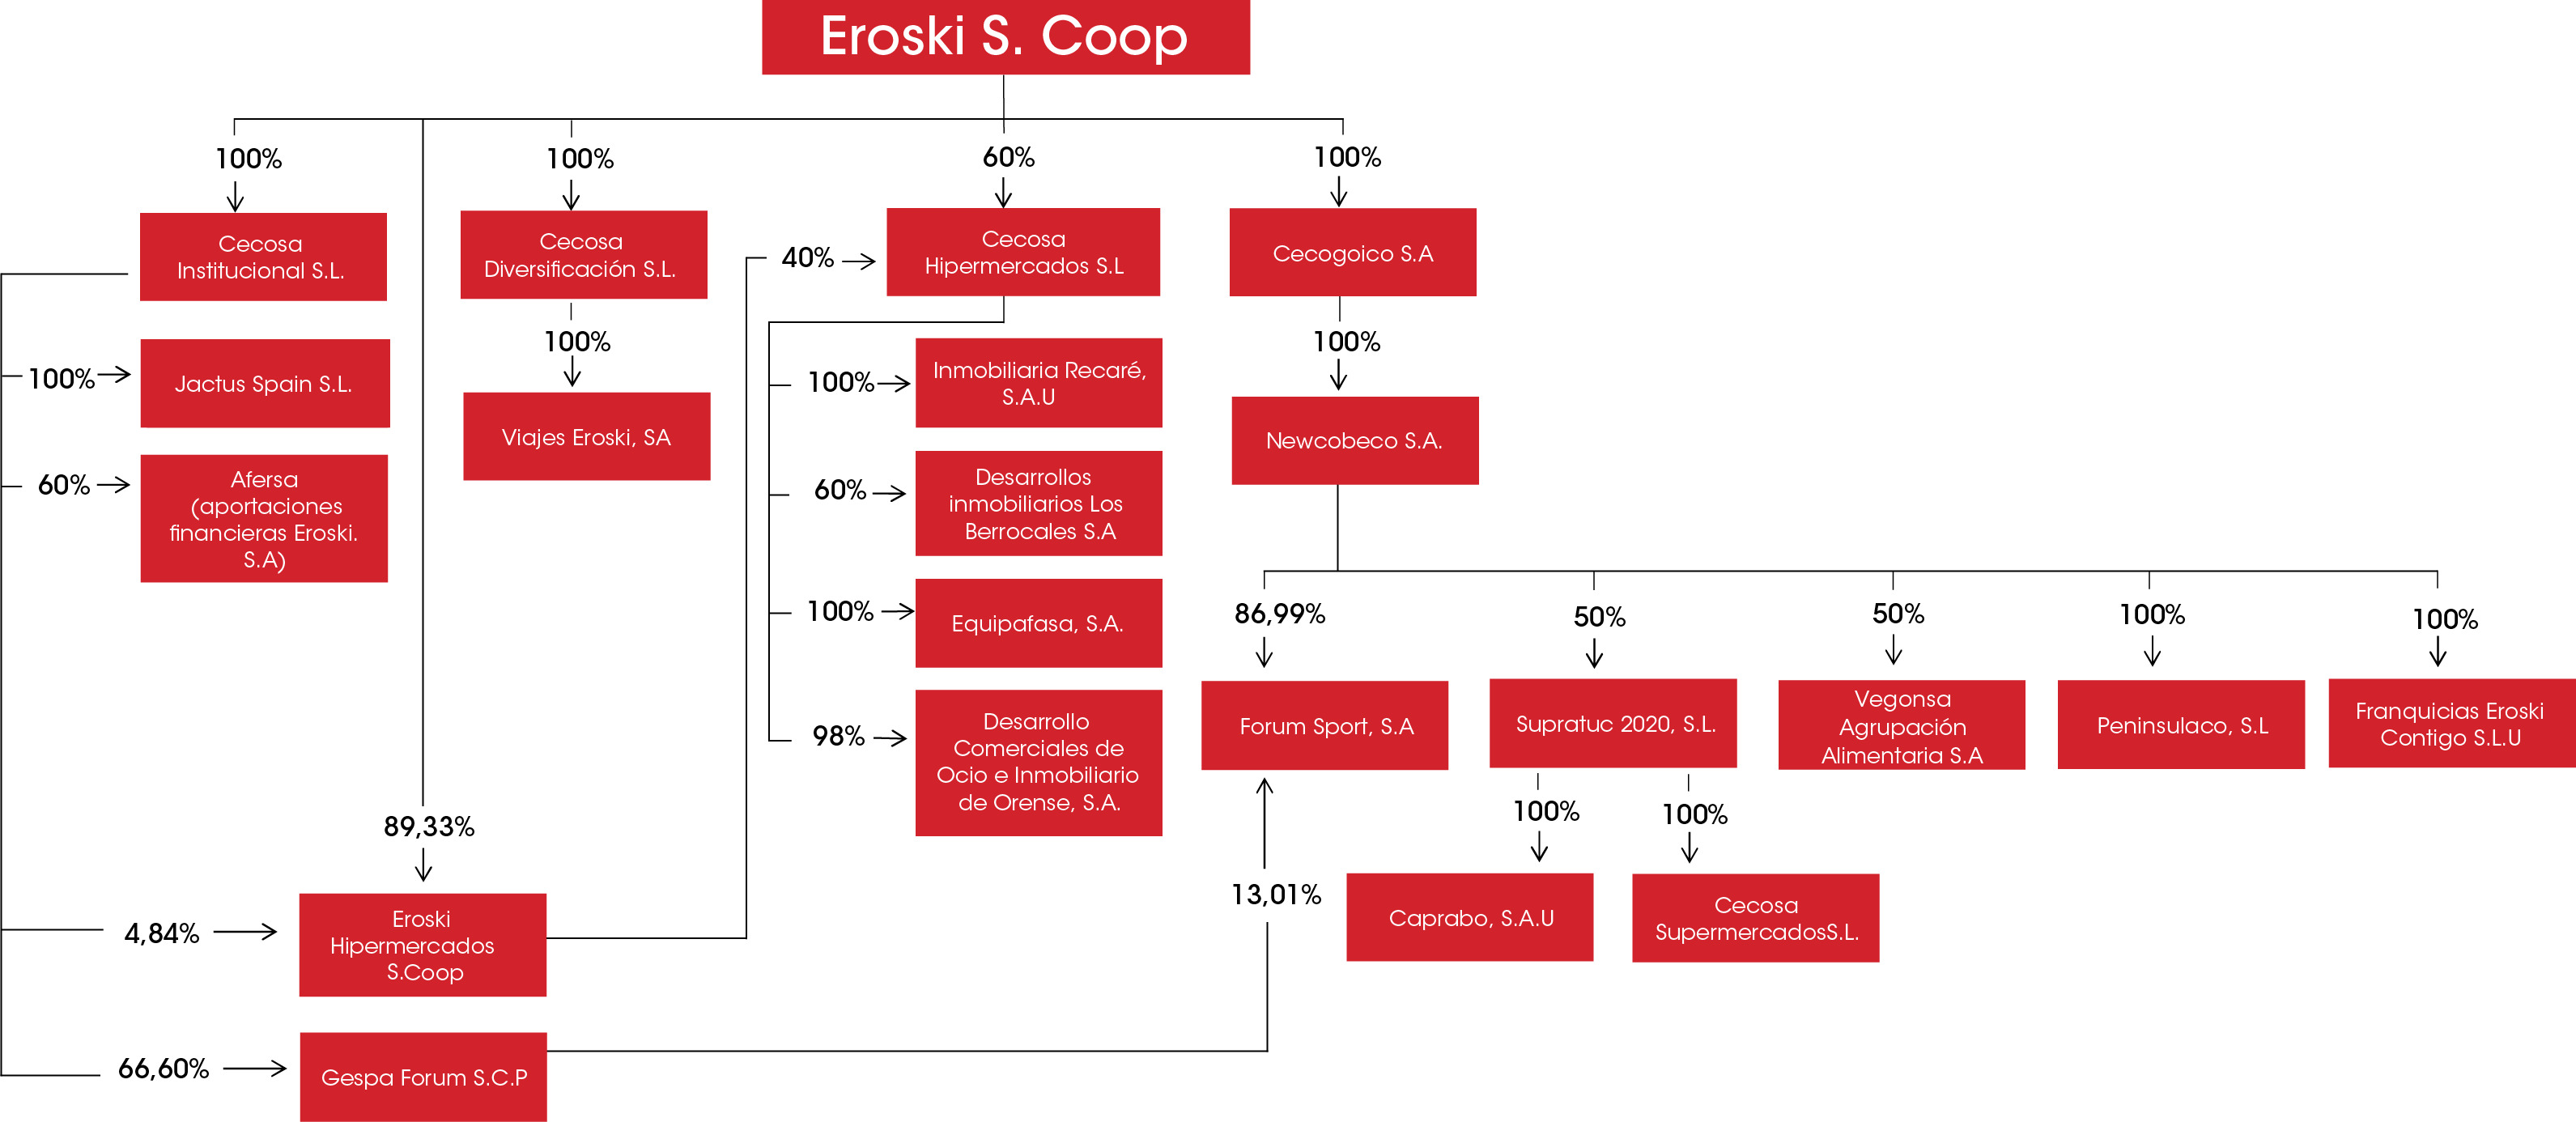 Organigrama societario de participación de Eroski